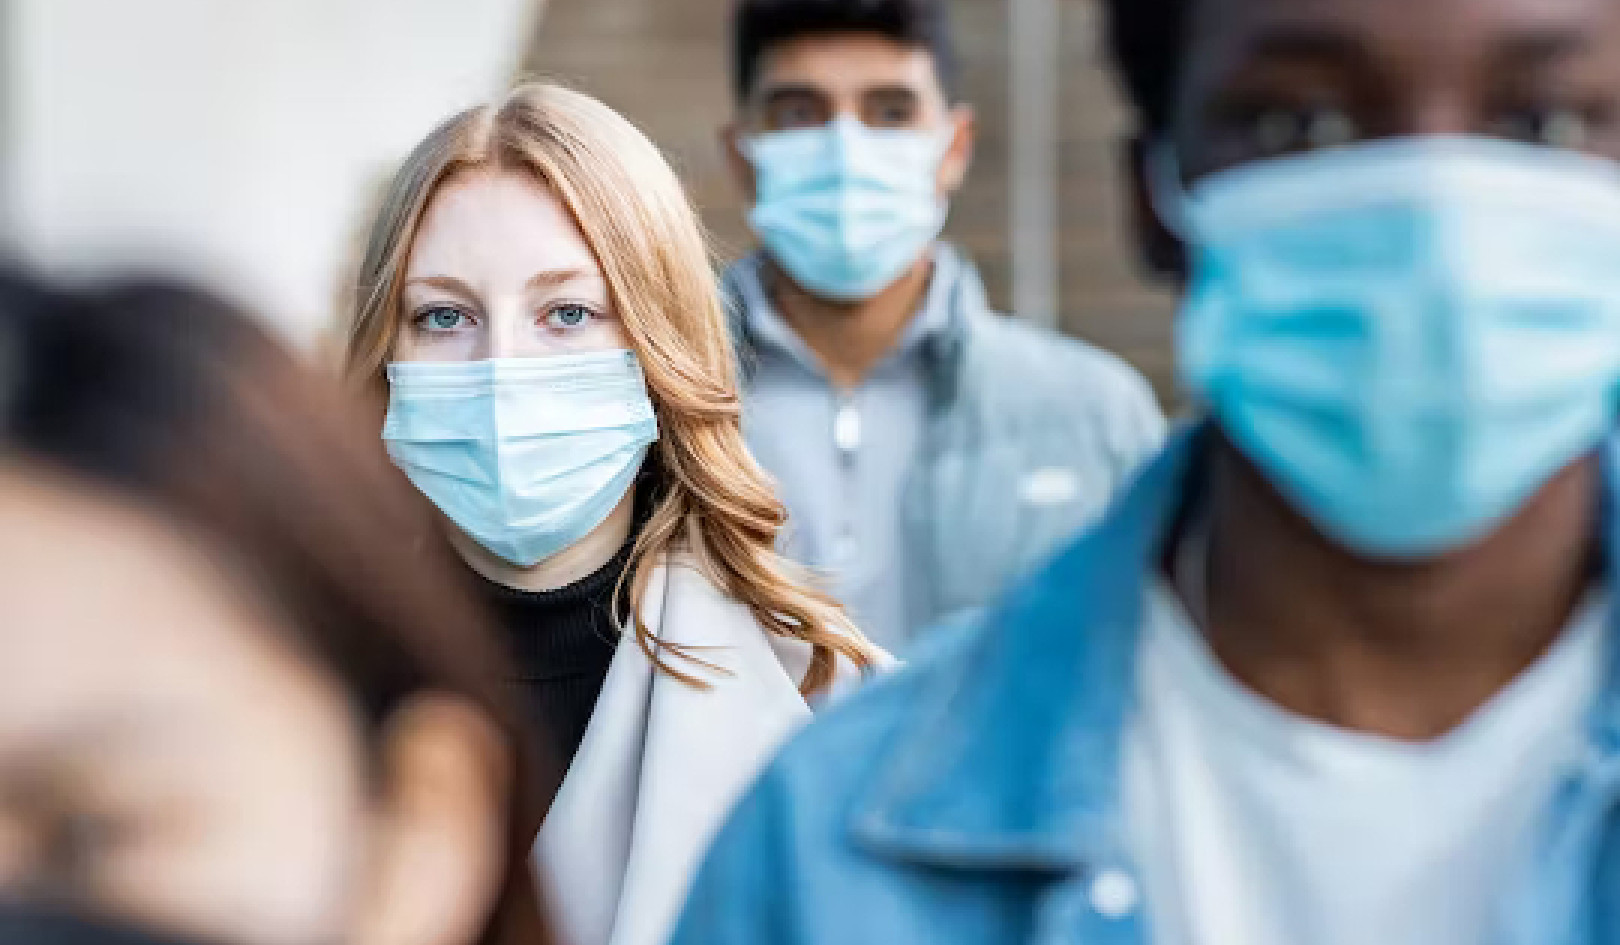 Οι μάσκες εξακολουθούν να είναι ένας δοκιμασμένος και αληθινός τρόπος για να προστατεύσετε τον εαυτό σας από ιούς